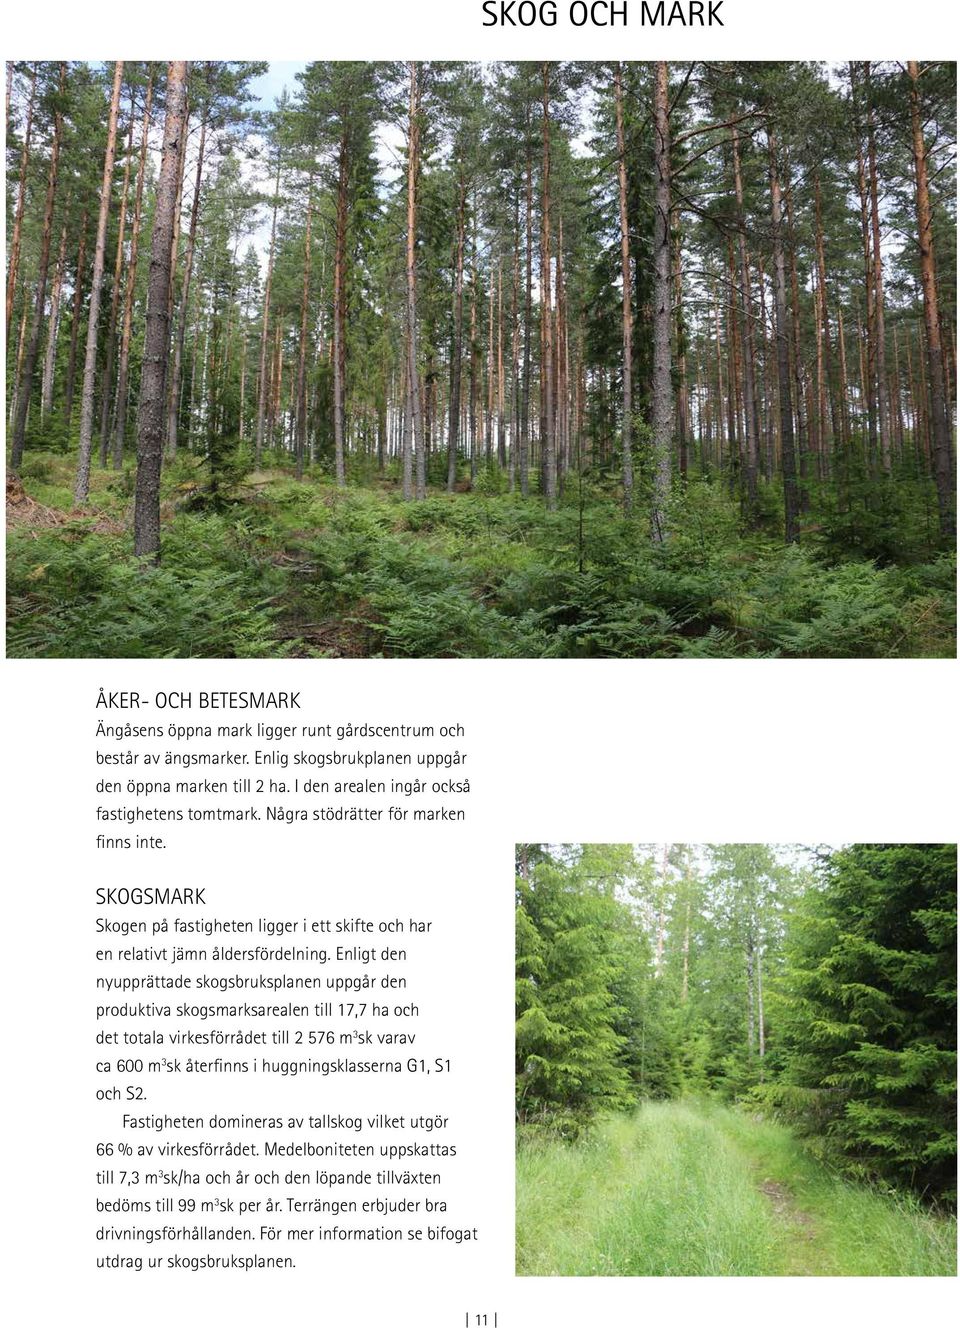 Enligt den nyupprättade skogsbruksplanen uppgår den produktiva skogsmarksarealen till 17,7 ha och det totala virkesförrådet till 576 m 3 sk varav ca 600 m 3 sk återfinns i huggningsklasserna G1, S1